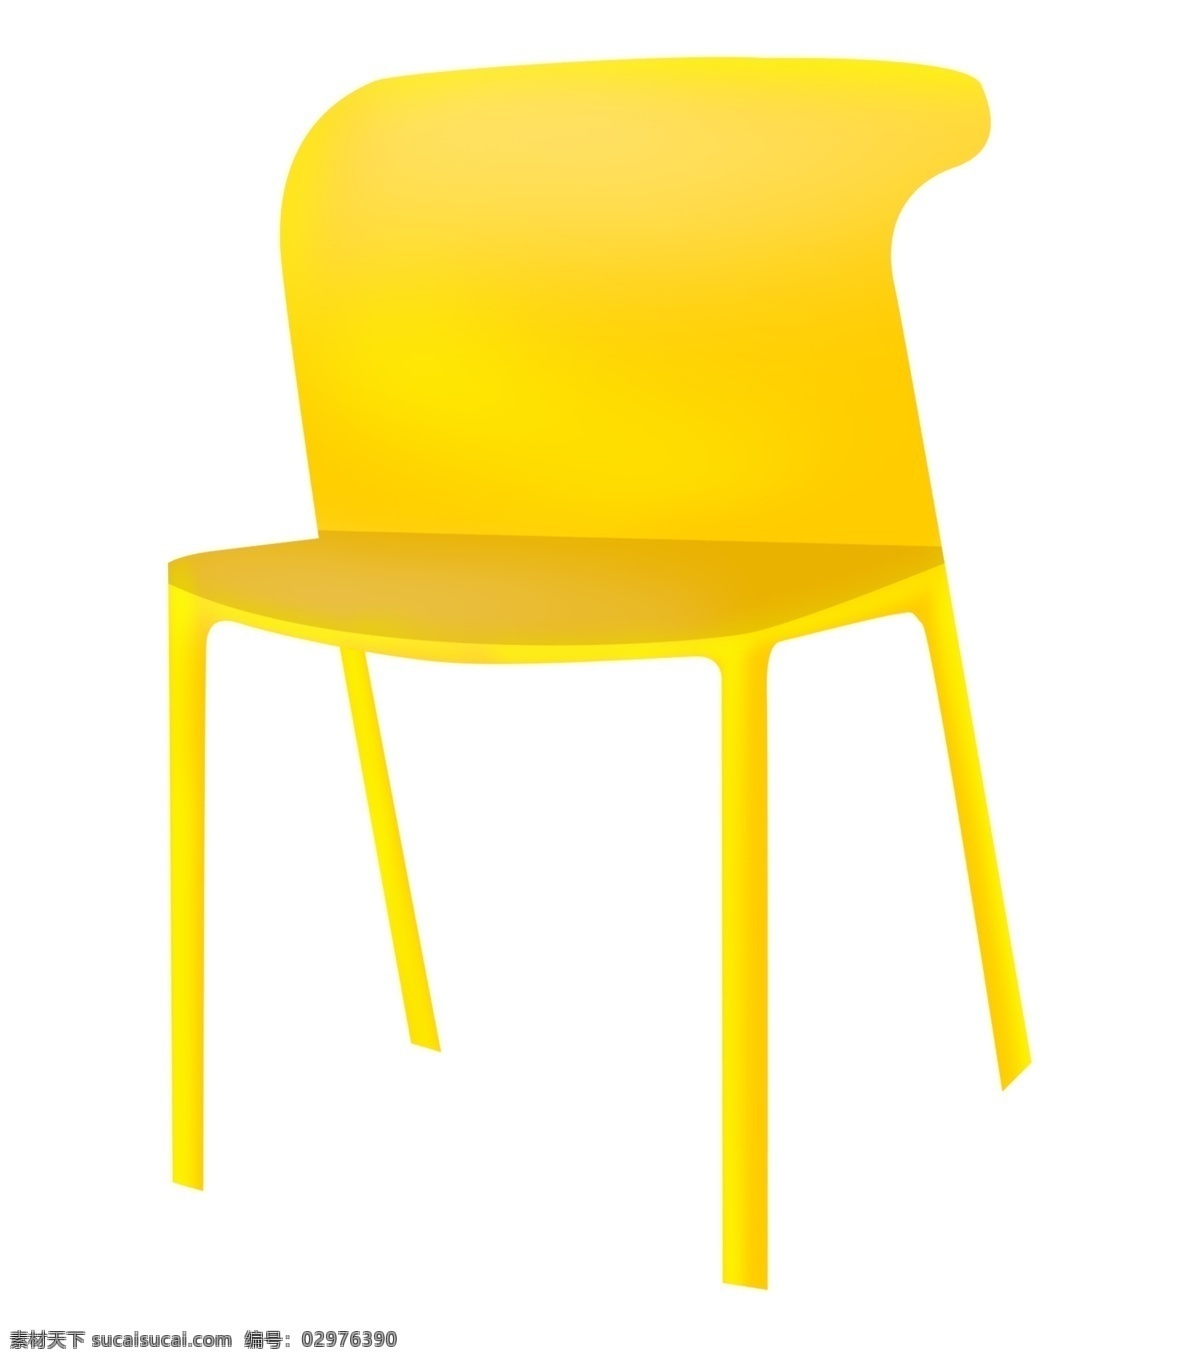 黄色 椅子 家具 插画 黄色的椅子 卡通插画 椅子插画 家具插画 家具椅子 凳子座位 塑料的椅子